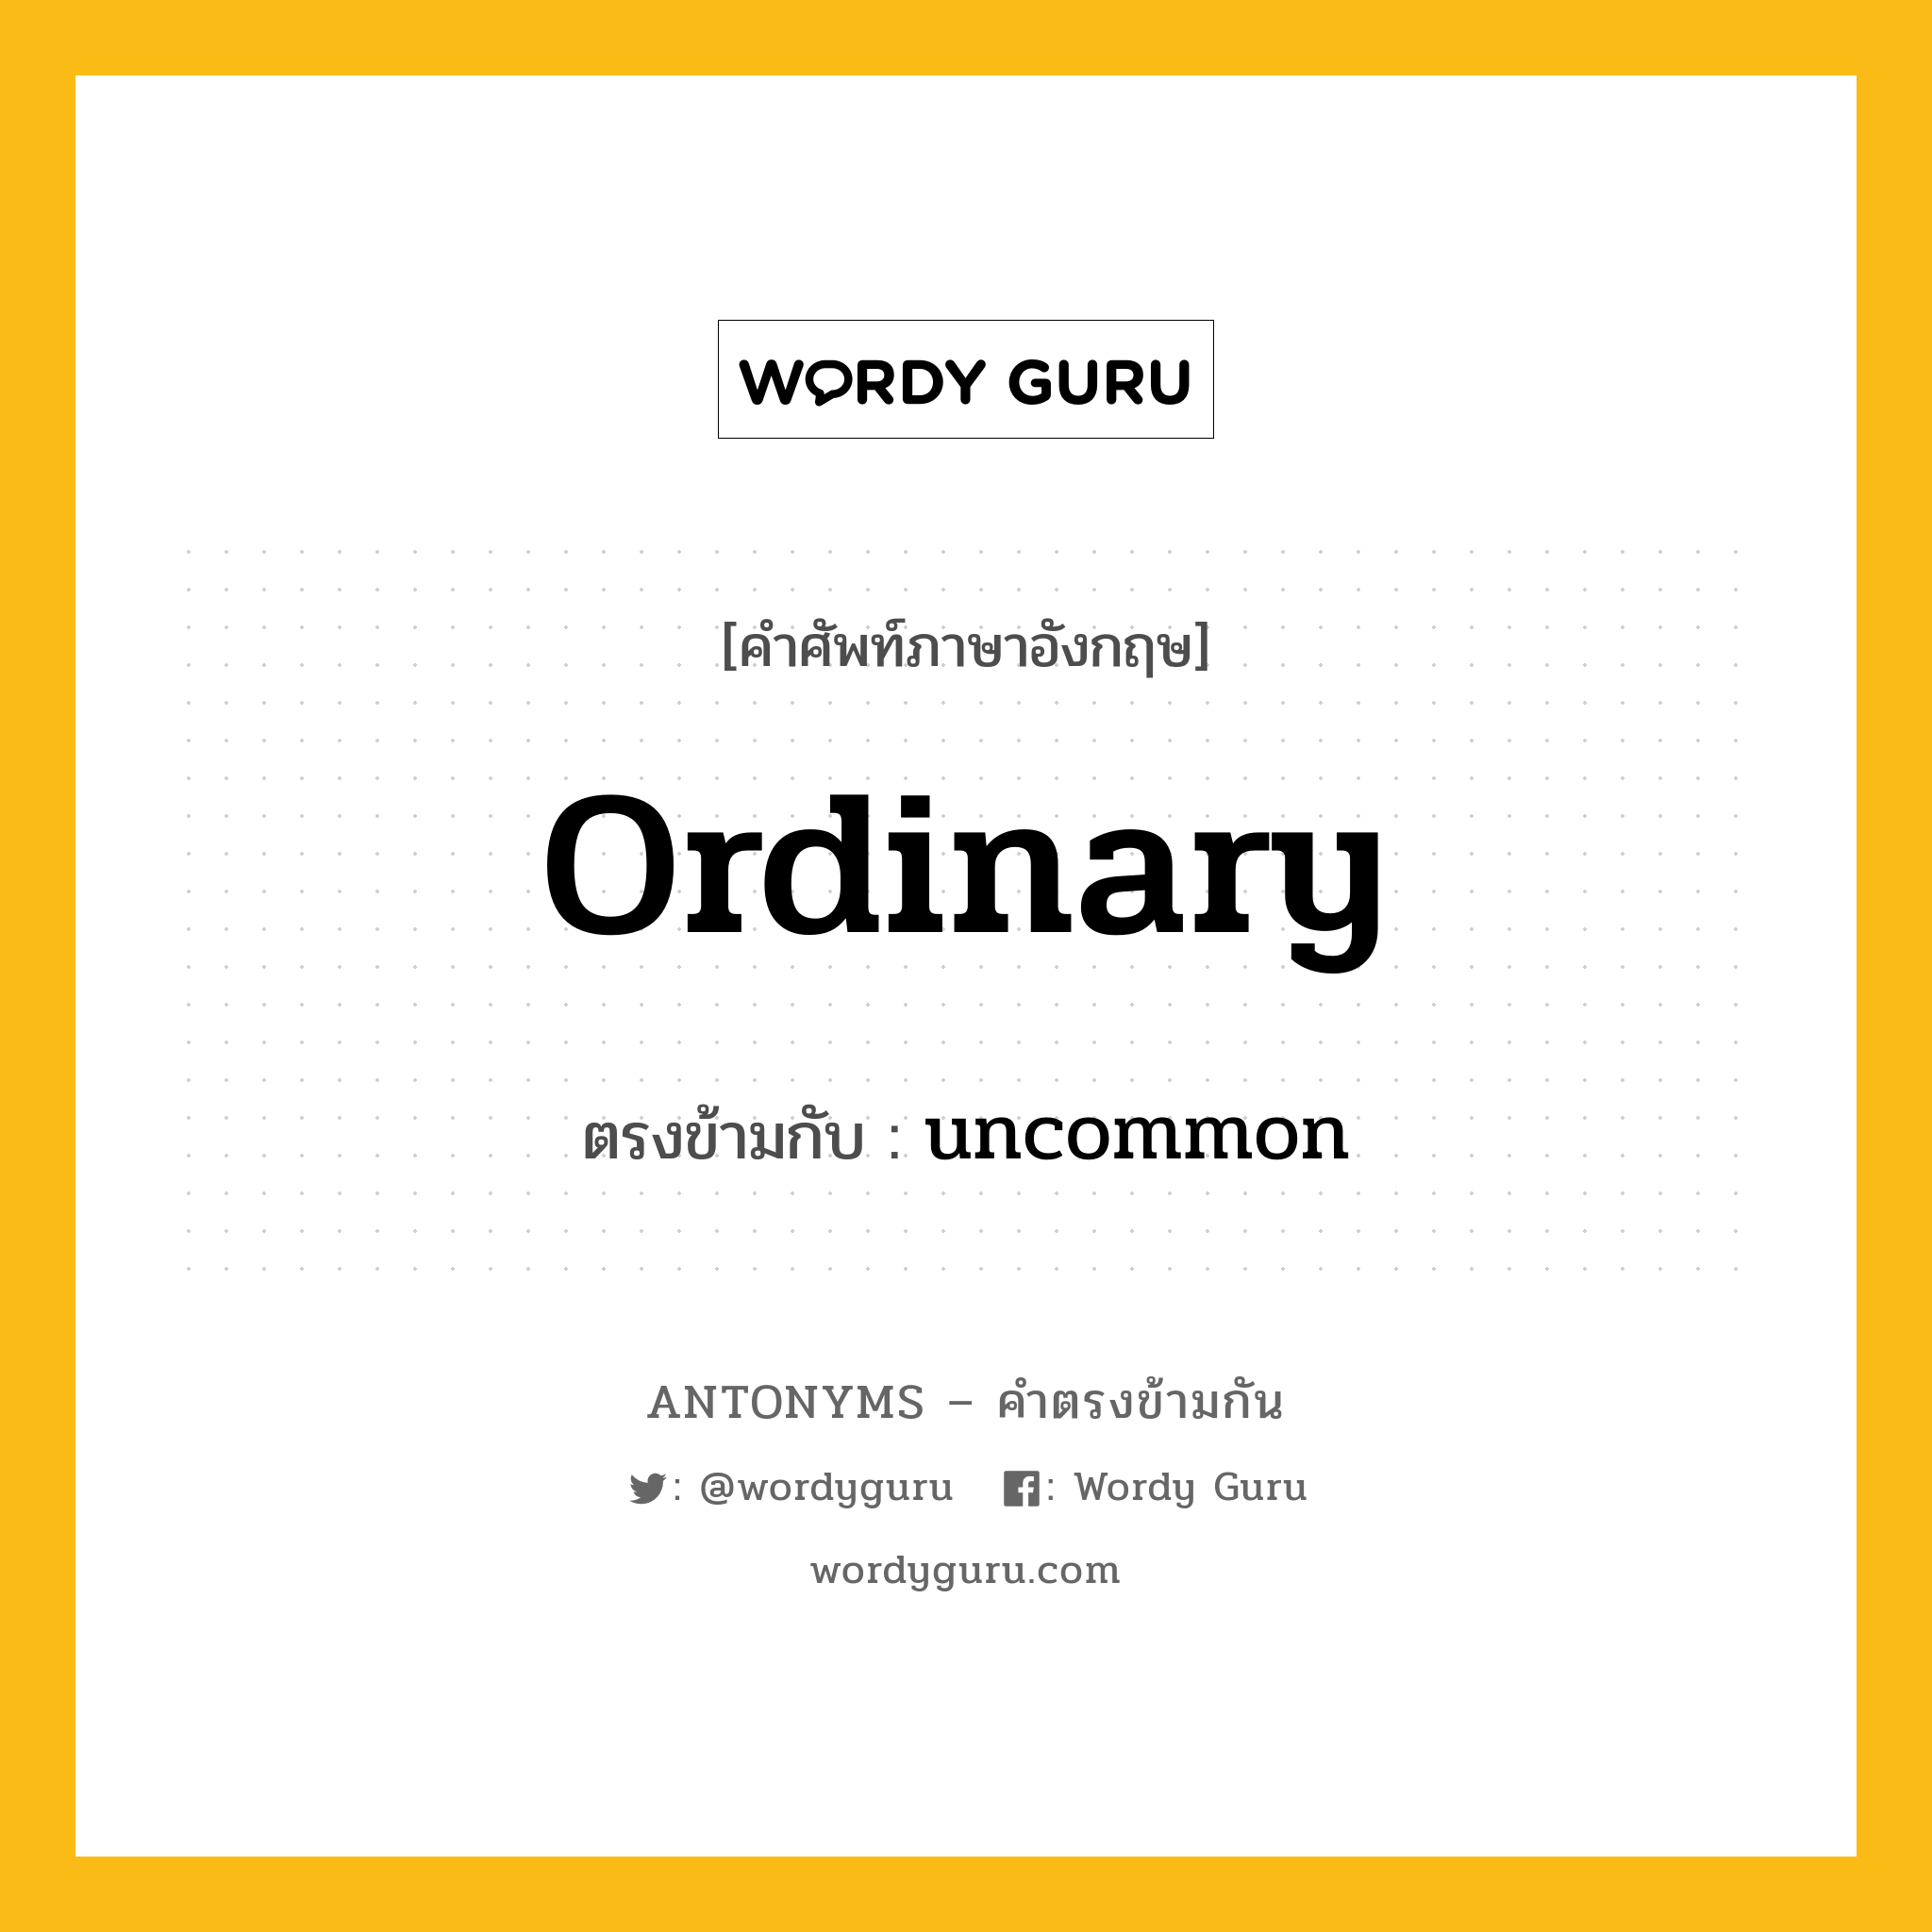 ordinary เป็นคำตรงข้ามกับคำไหนบ้าง?, คำศัพท์ภาษาอังกฤษ ordinary ตรงข้ามกับ uncommon หมวด uncommon